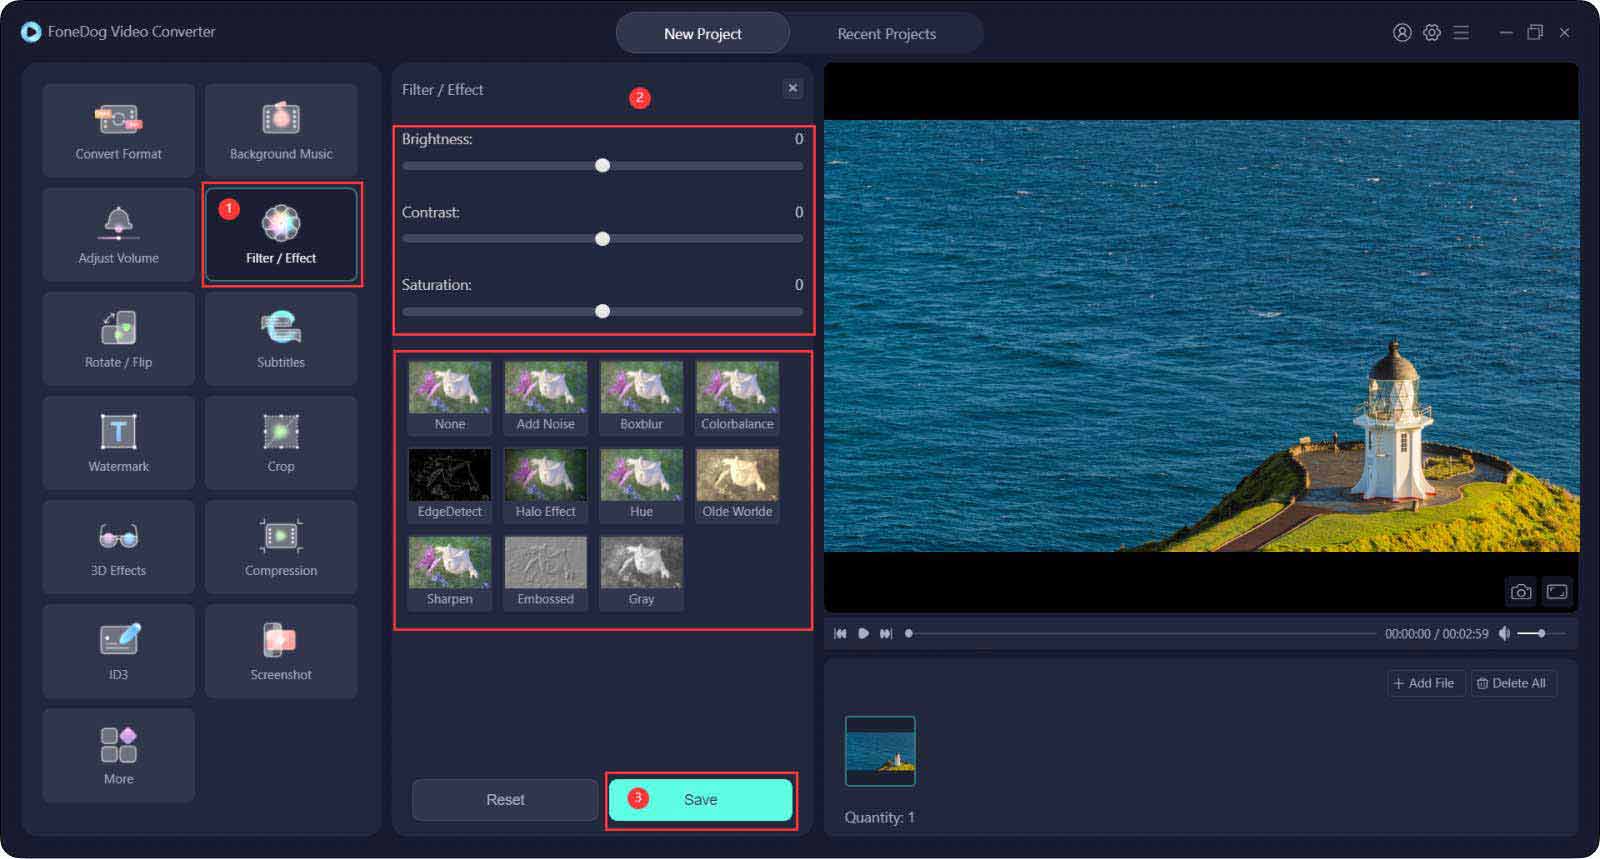 Le meilleur convertisseur vidéo pour combiner des vidéos GoPro - Convertisseur vidéo FoneDog : ajouter des effets